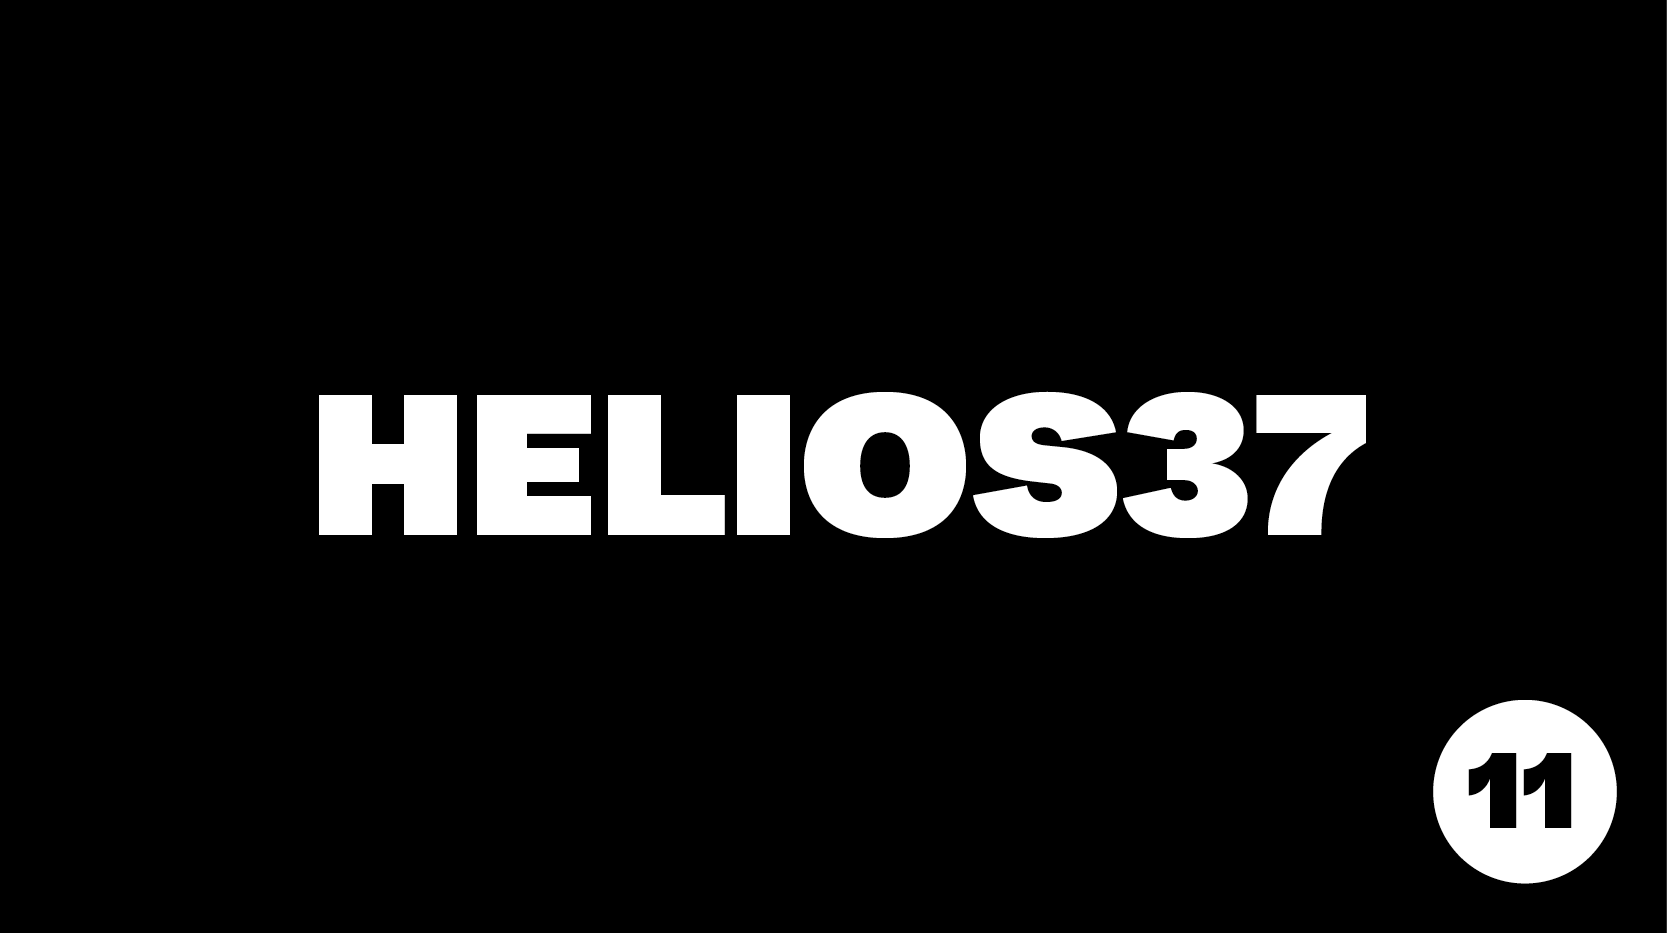 Helios37